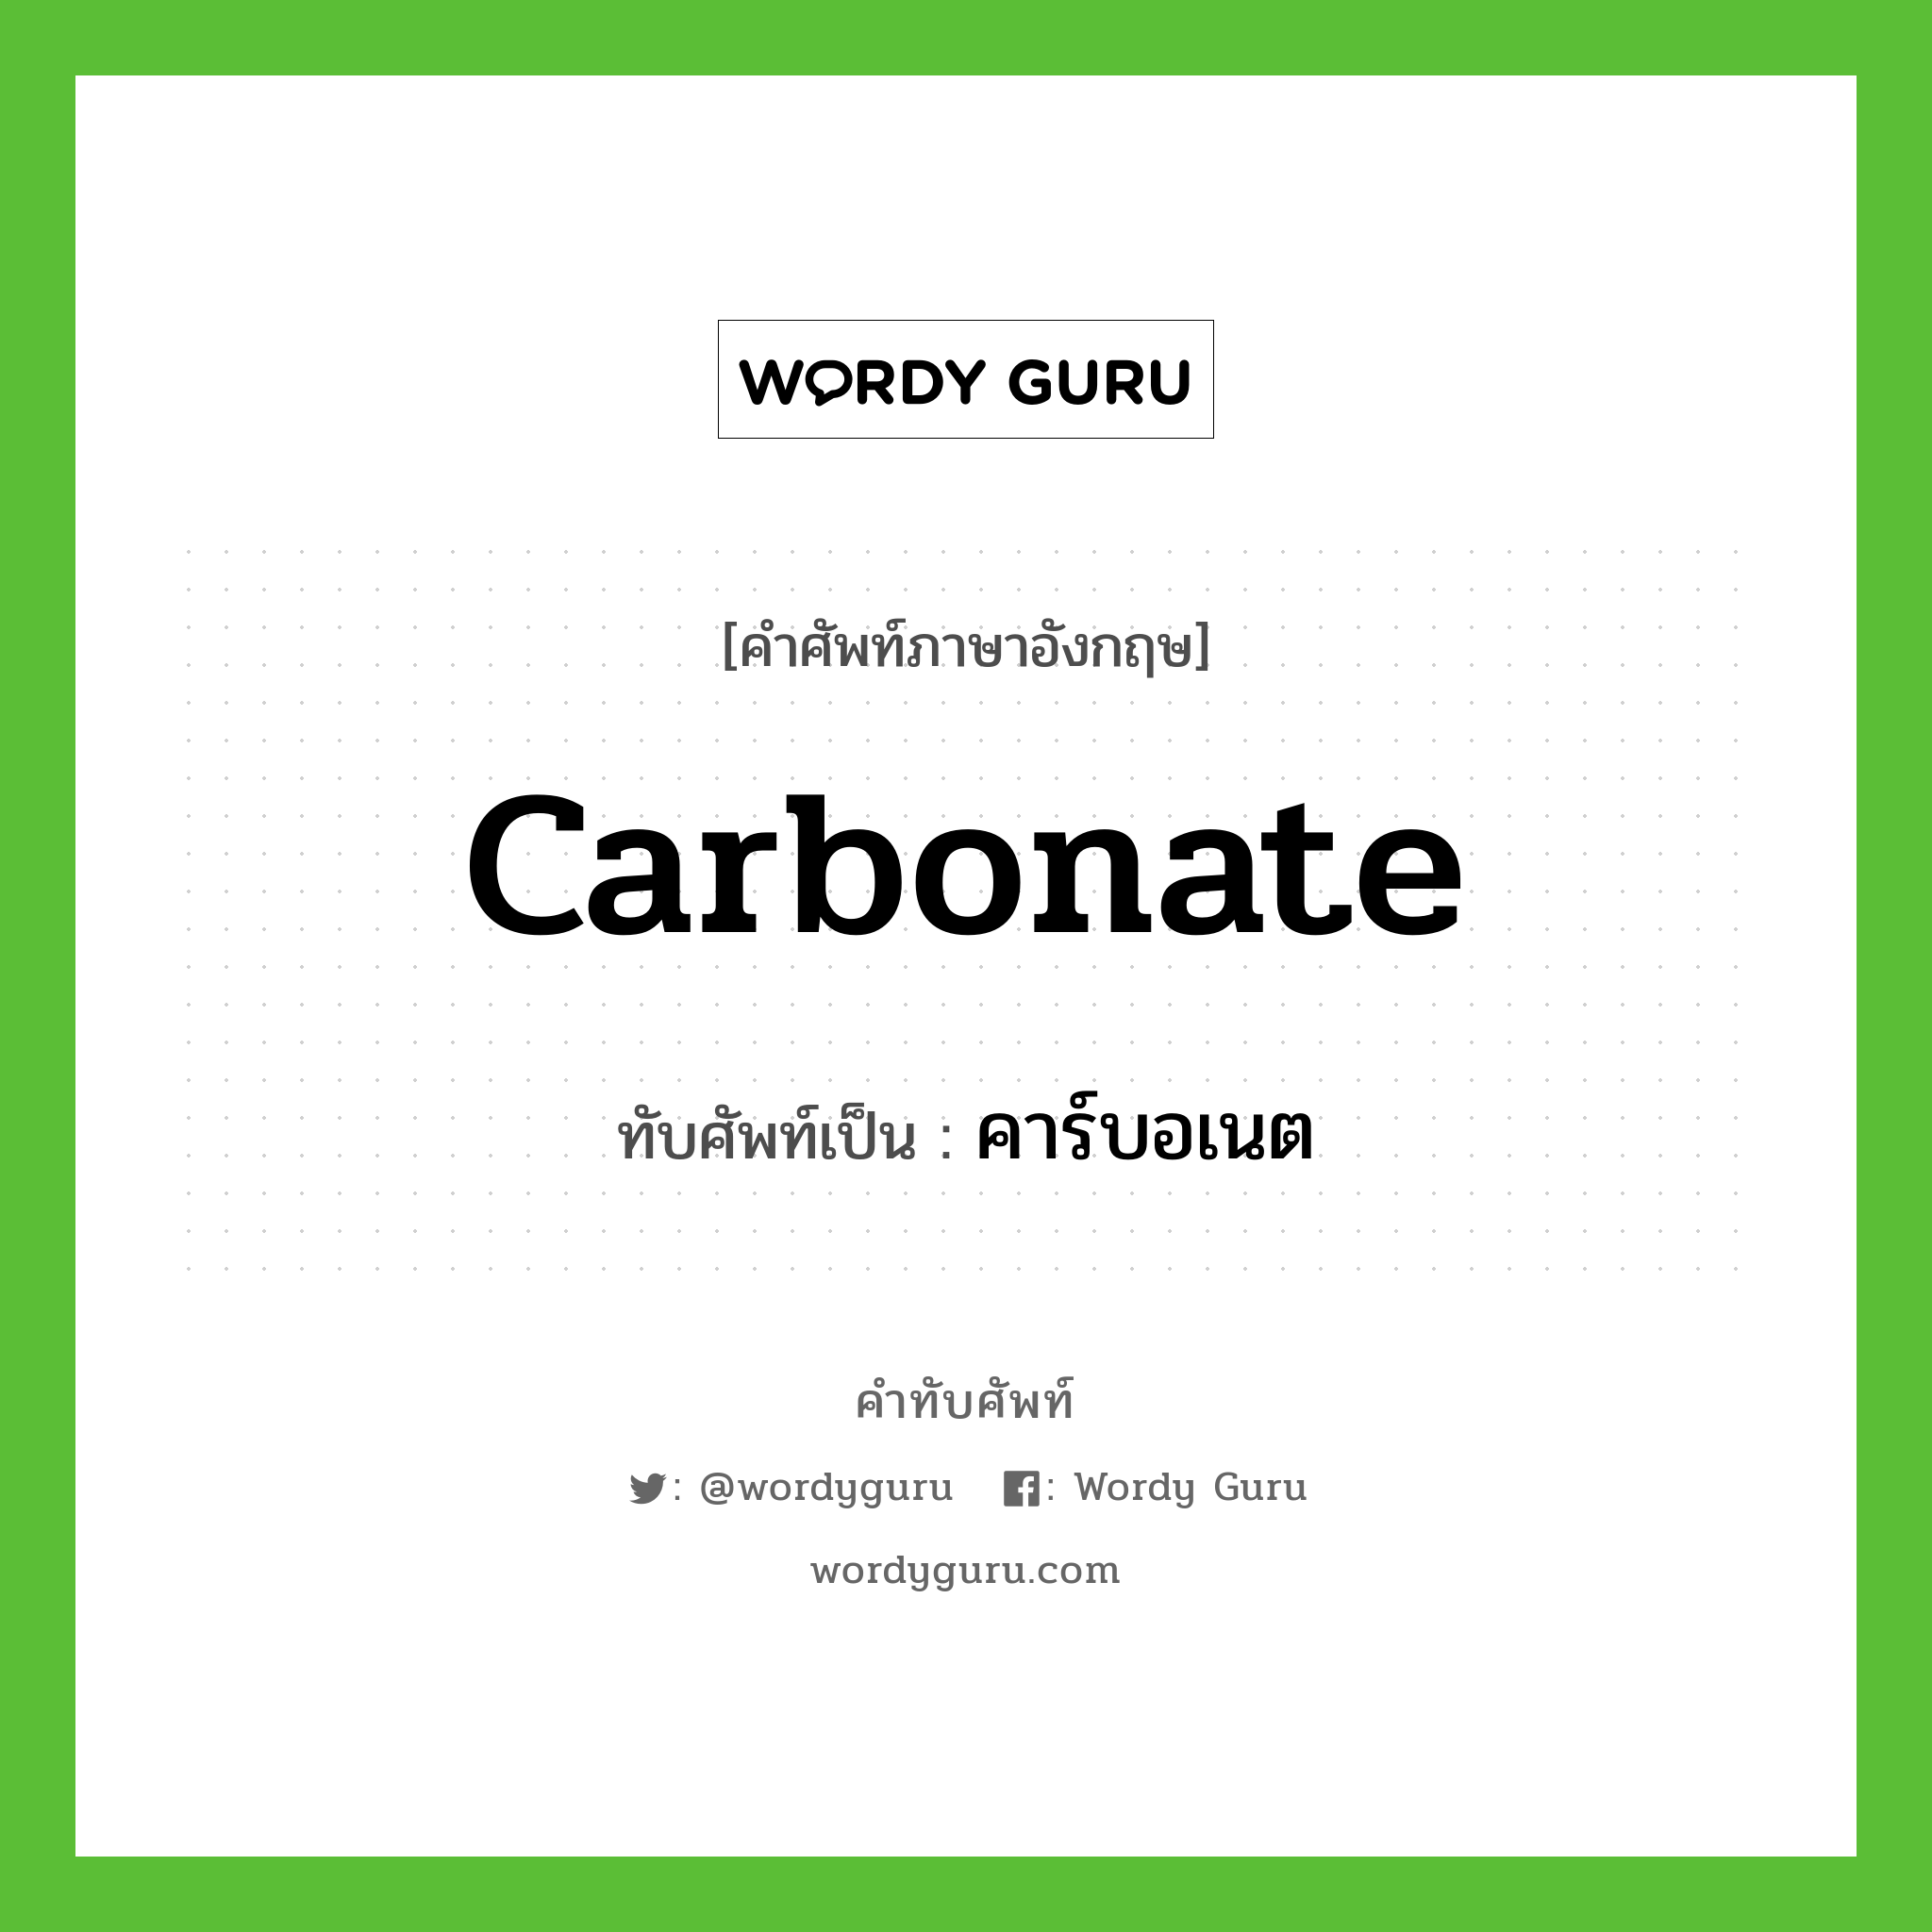 carbonate เขียนเป็นคำไทยว่าอะไร?, คำศัพท์ภาษาอังกฤษ carbonate ทับศัพท์เป็น คาร์บอเนต